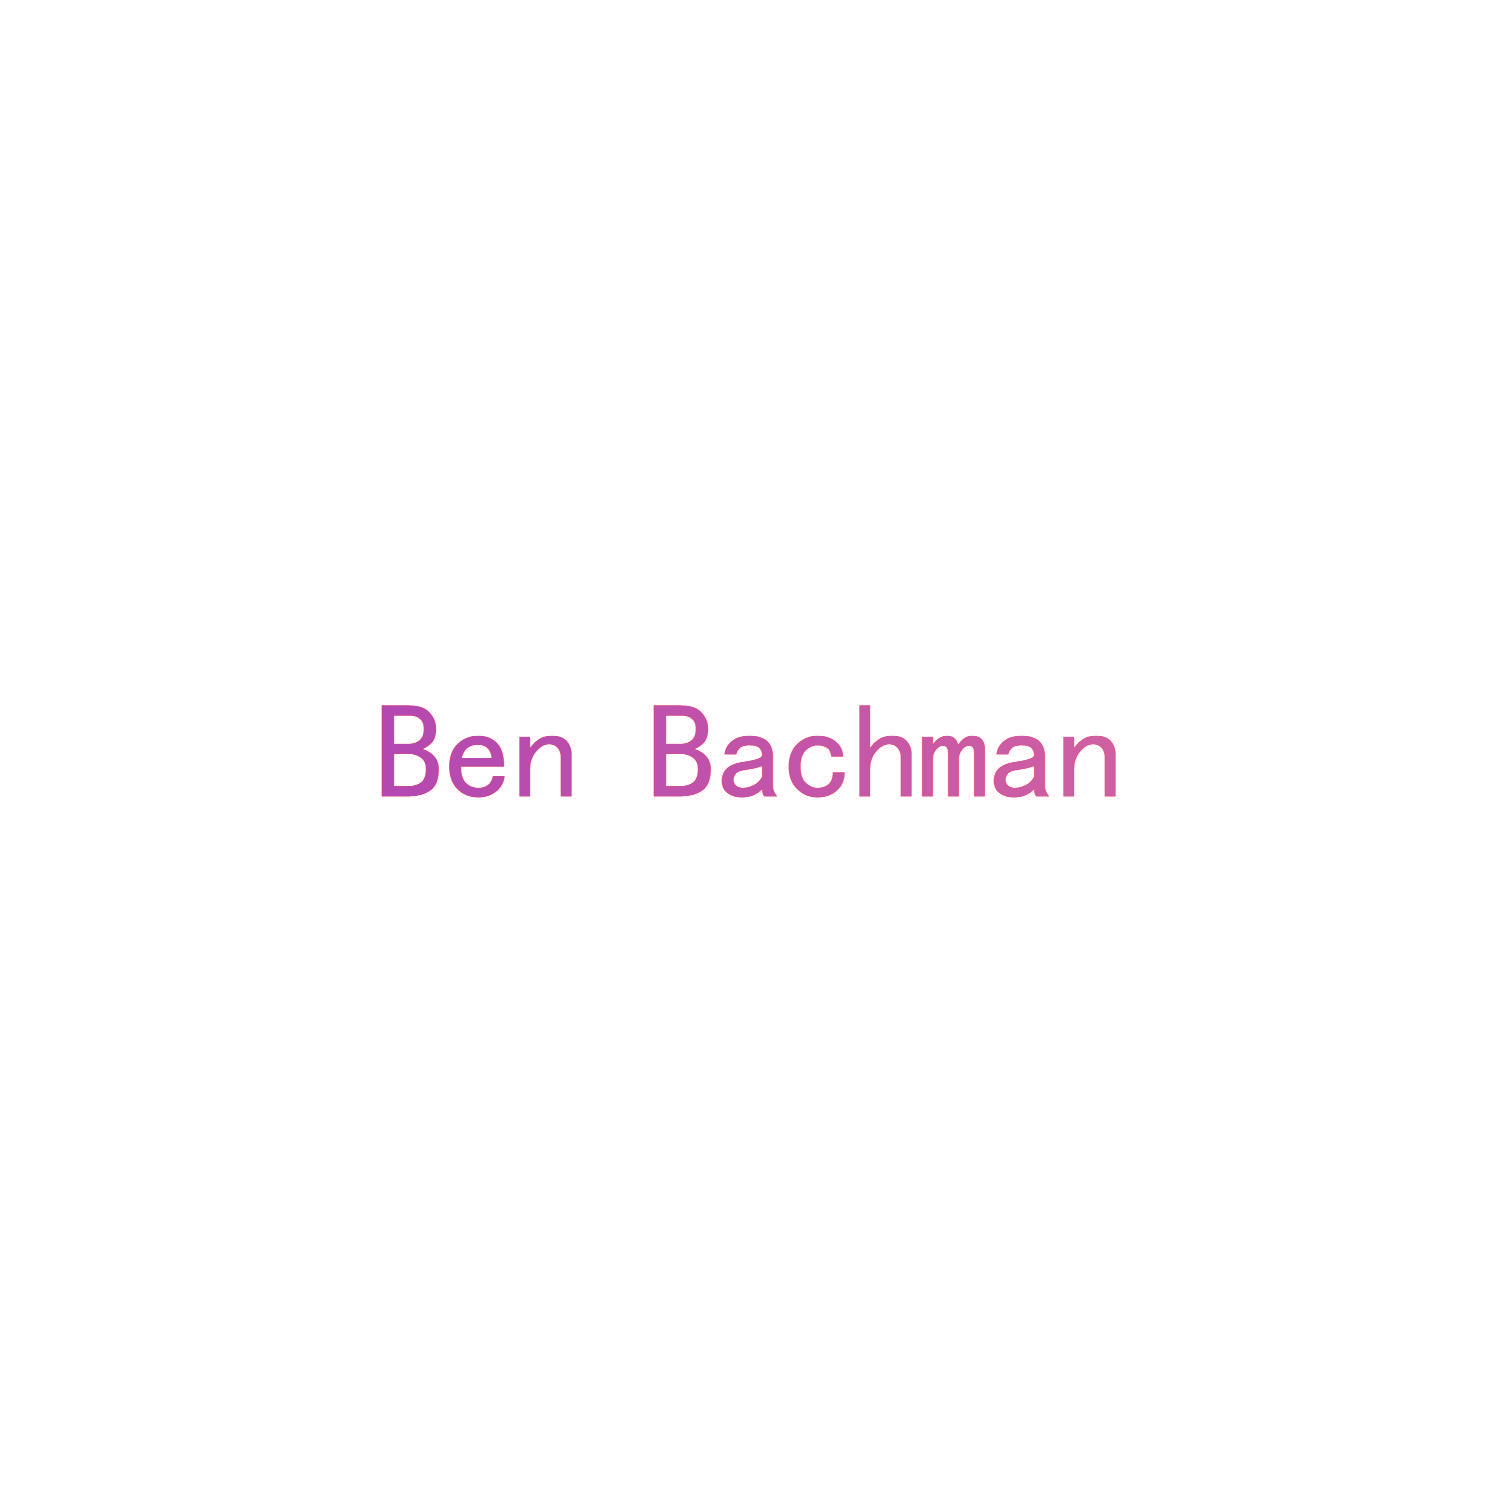 BEN BACHMAN